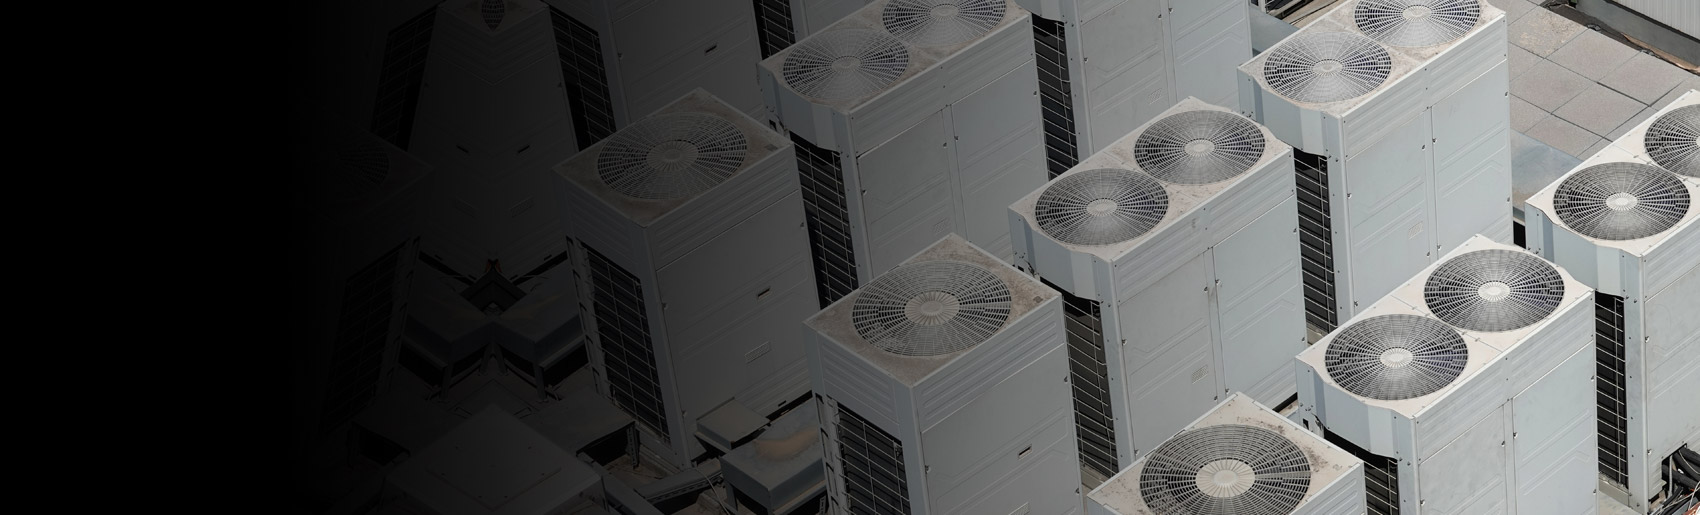 Varios equipos frigoríficos de caudal variable, con ventiladores de simple y doble caudal. 